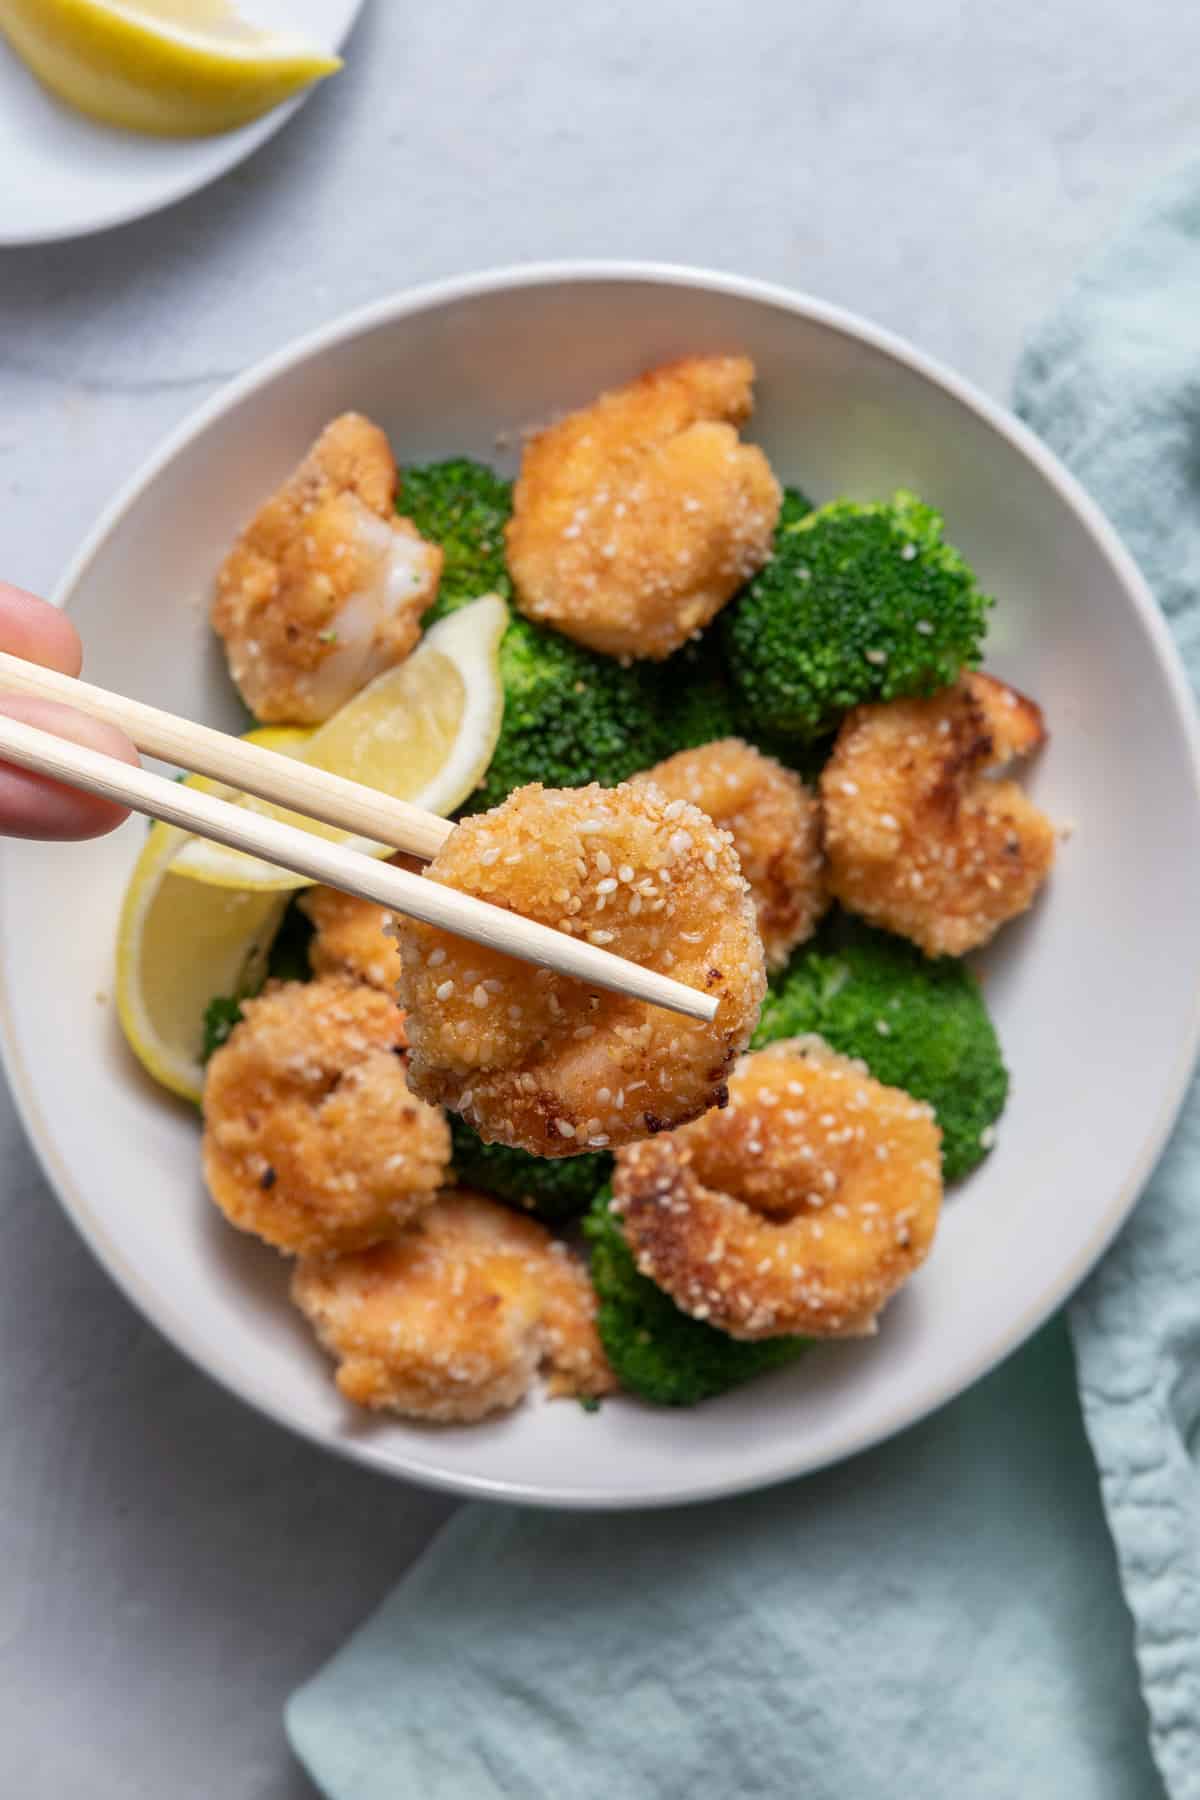 Chopstick holding sesame shrimp over plate of the shrimp with broccoli